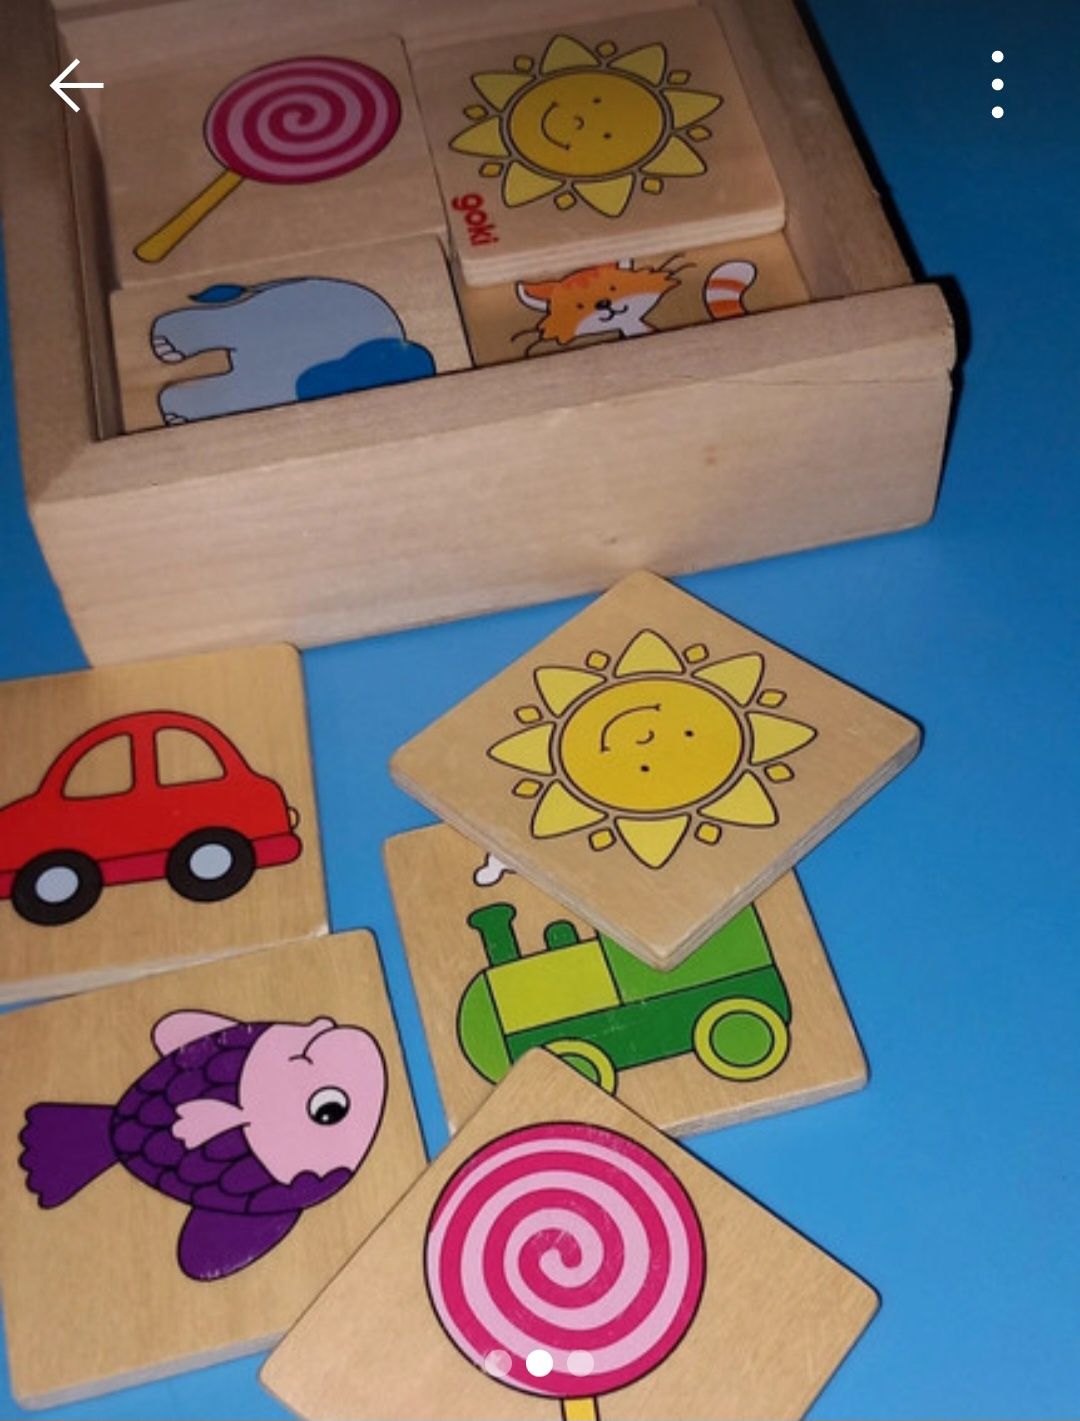 Zabawki edukacyjne drewniane z IKEA i Goki